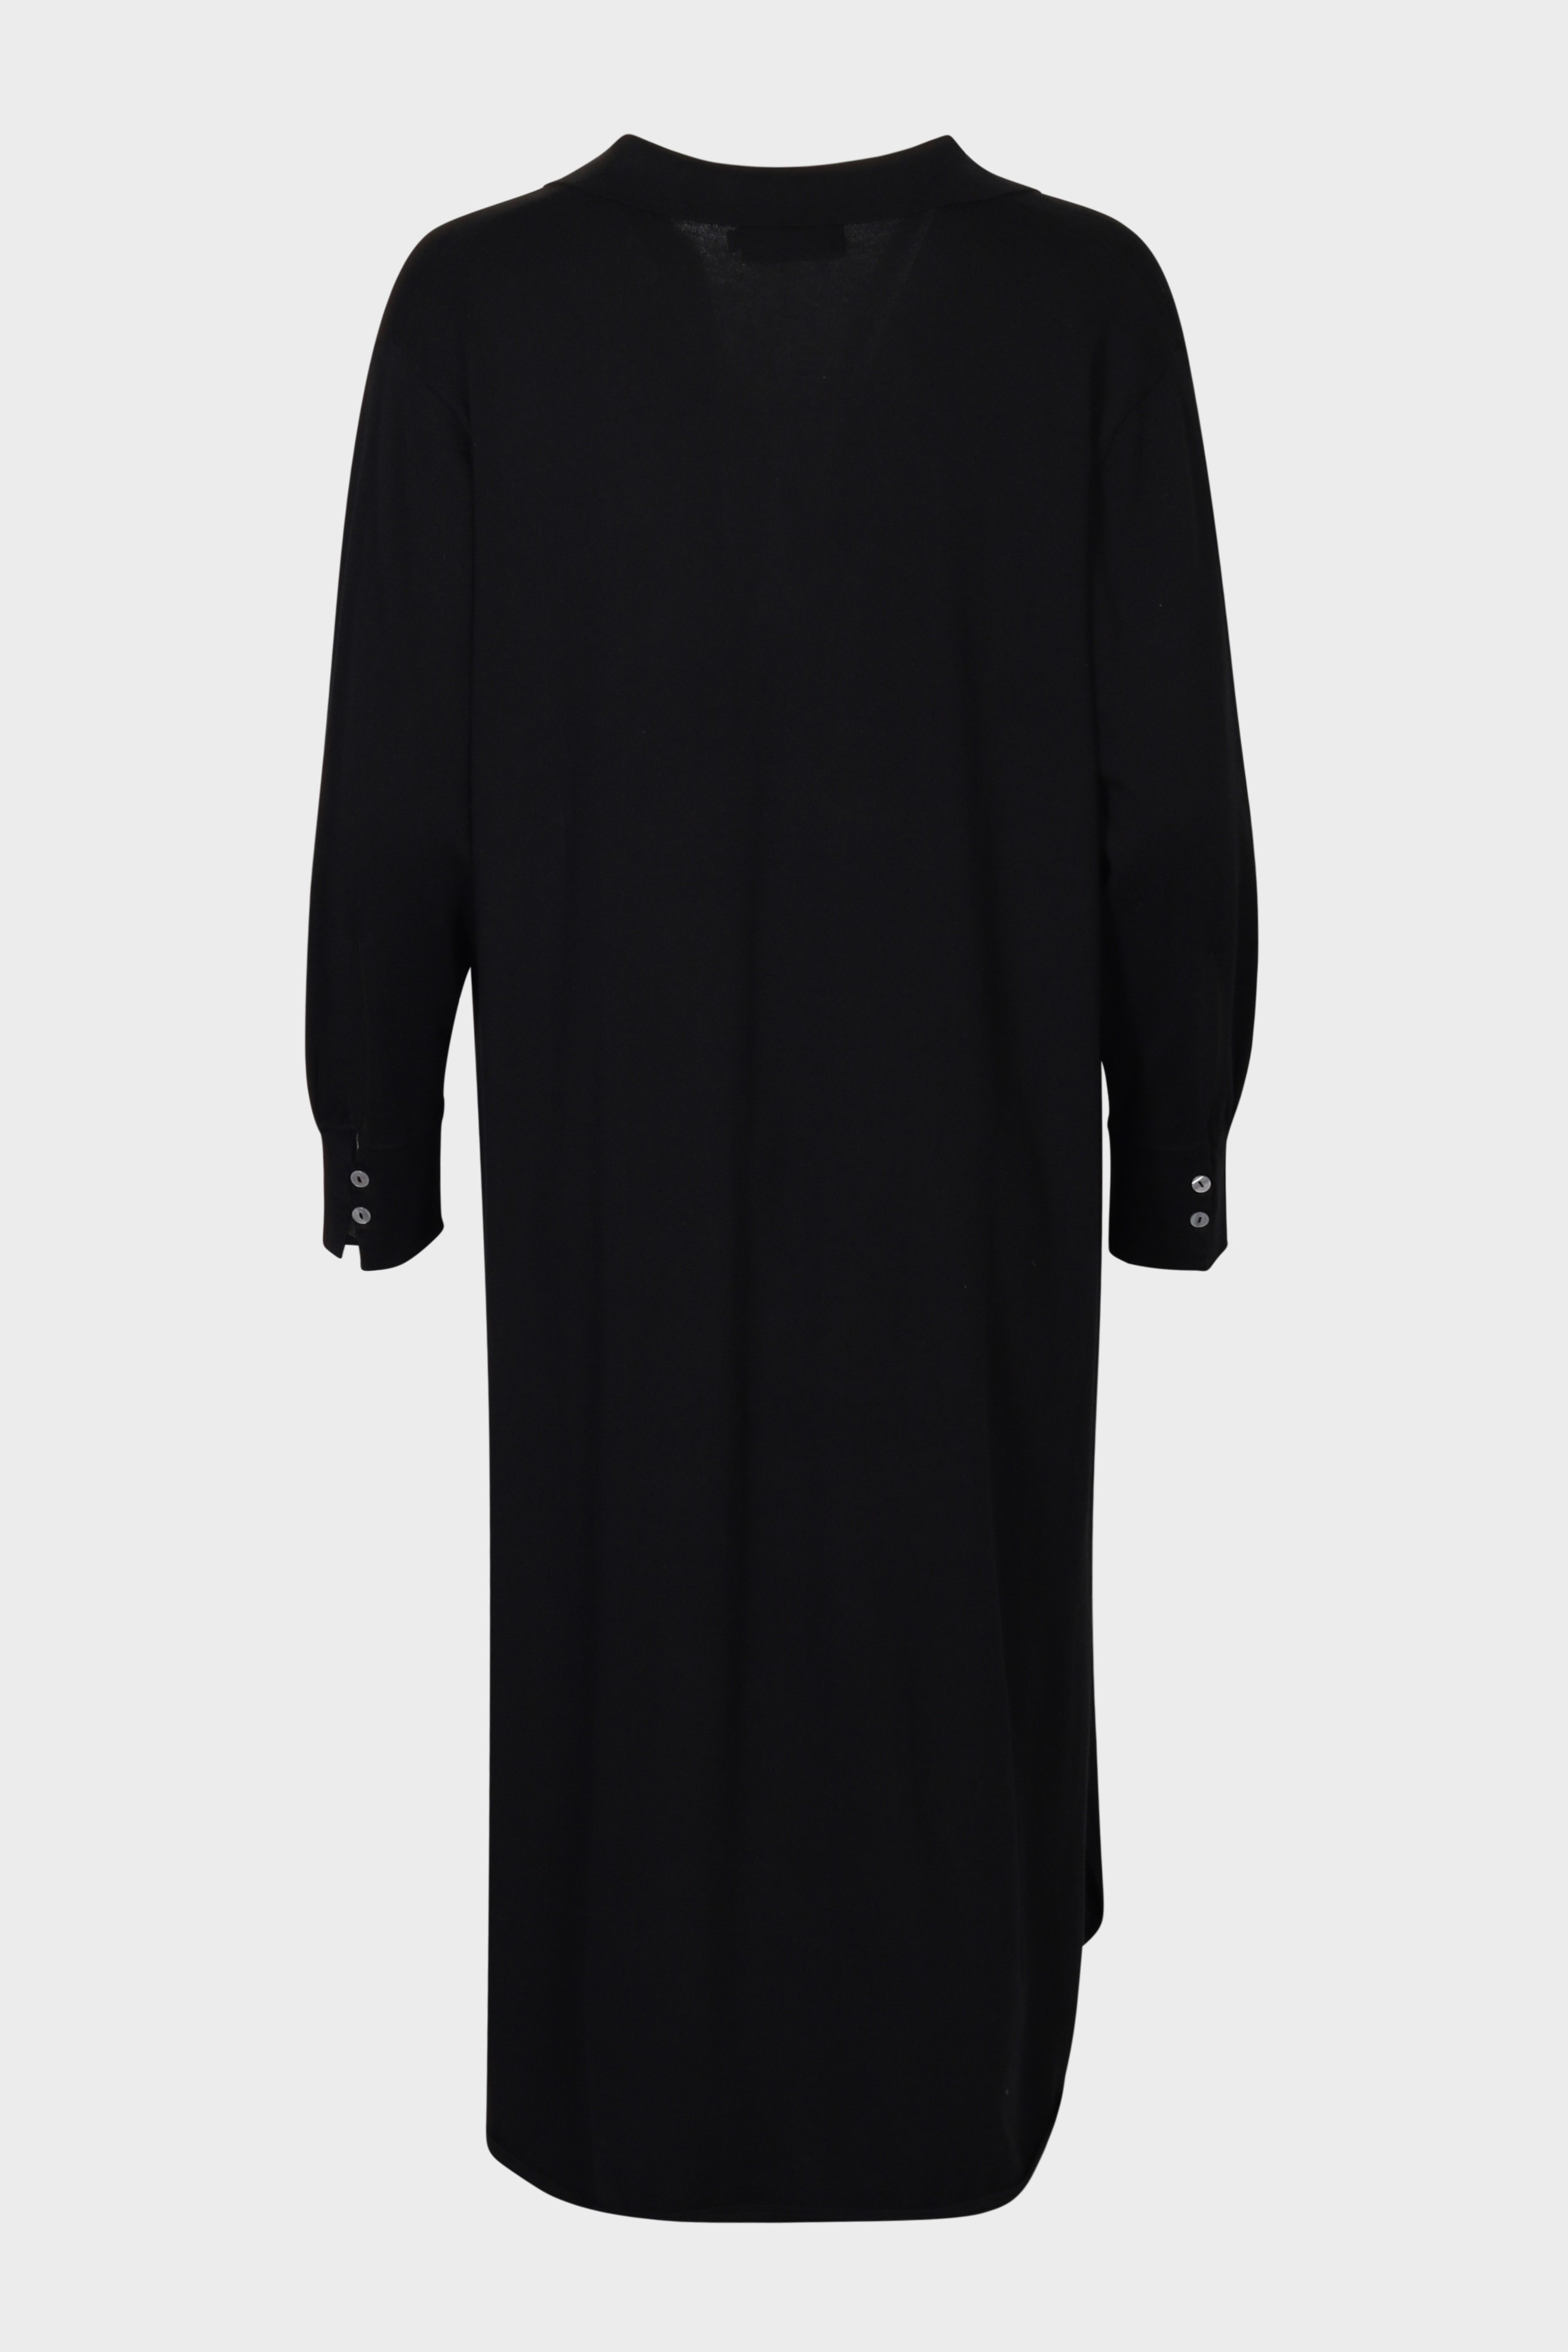 FLONA Cotton/ Cashmere Knit Dress in Black M